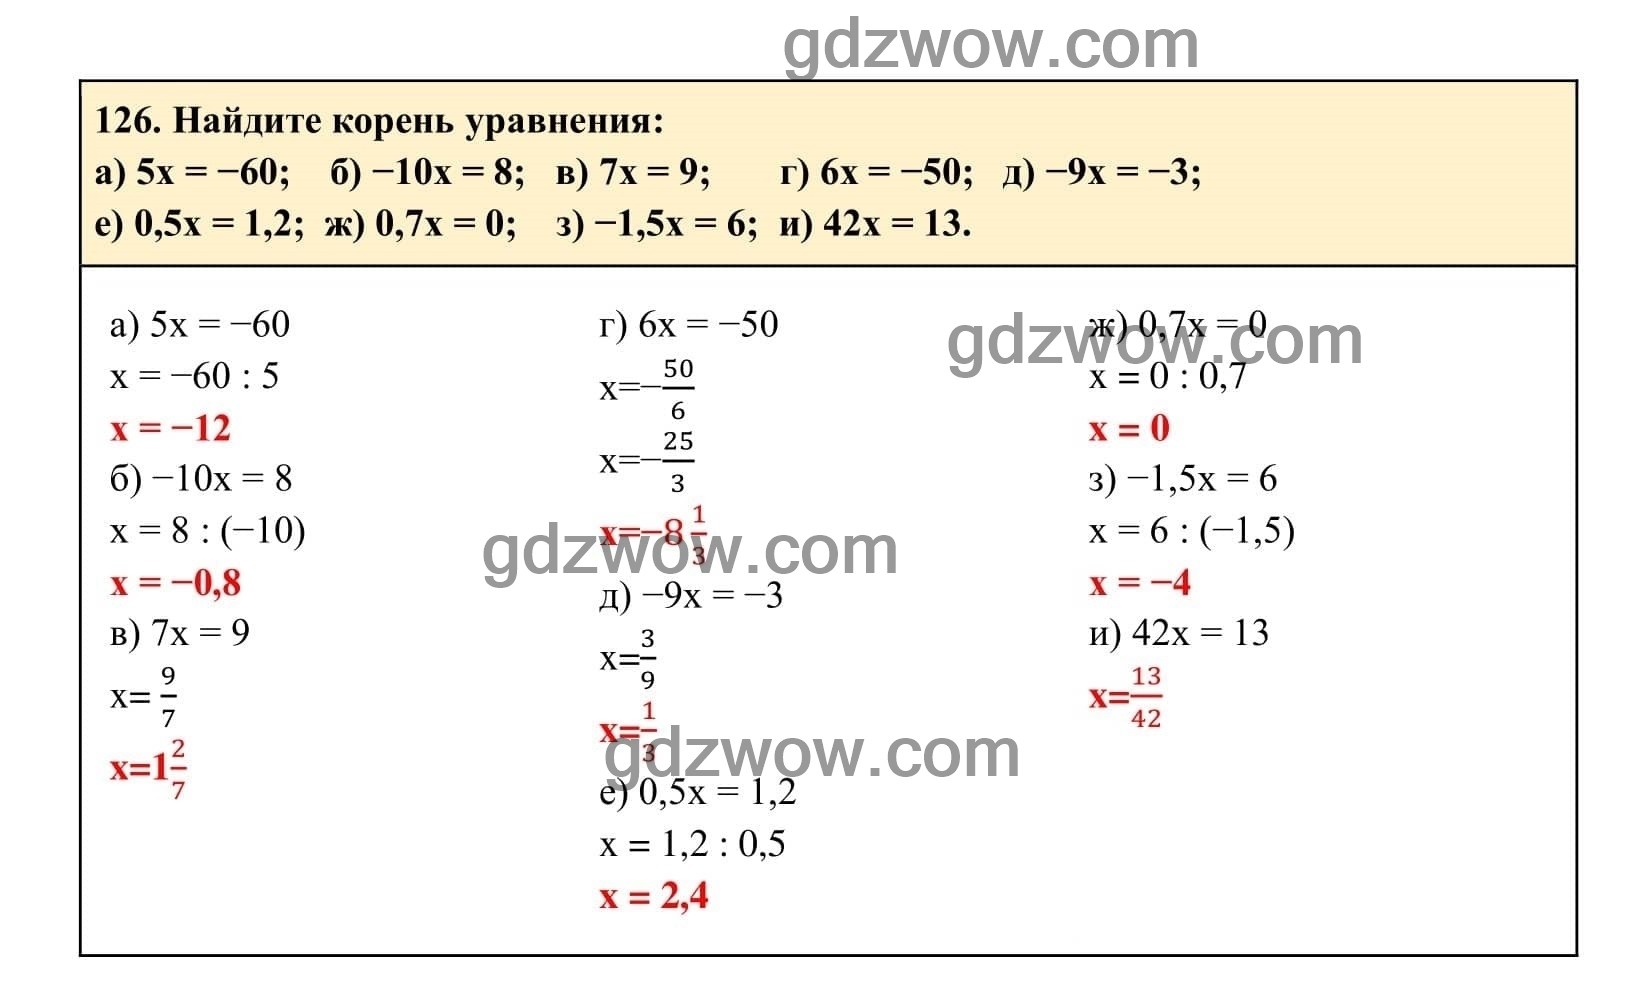 Упражнение 126 - ГДЗ по Алгебре 7 класс Учебник Макарычев (решебник) - GDZwow